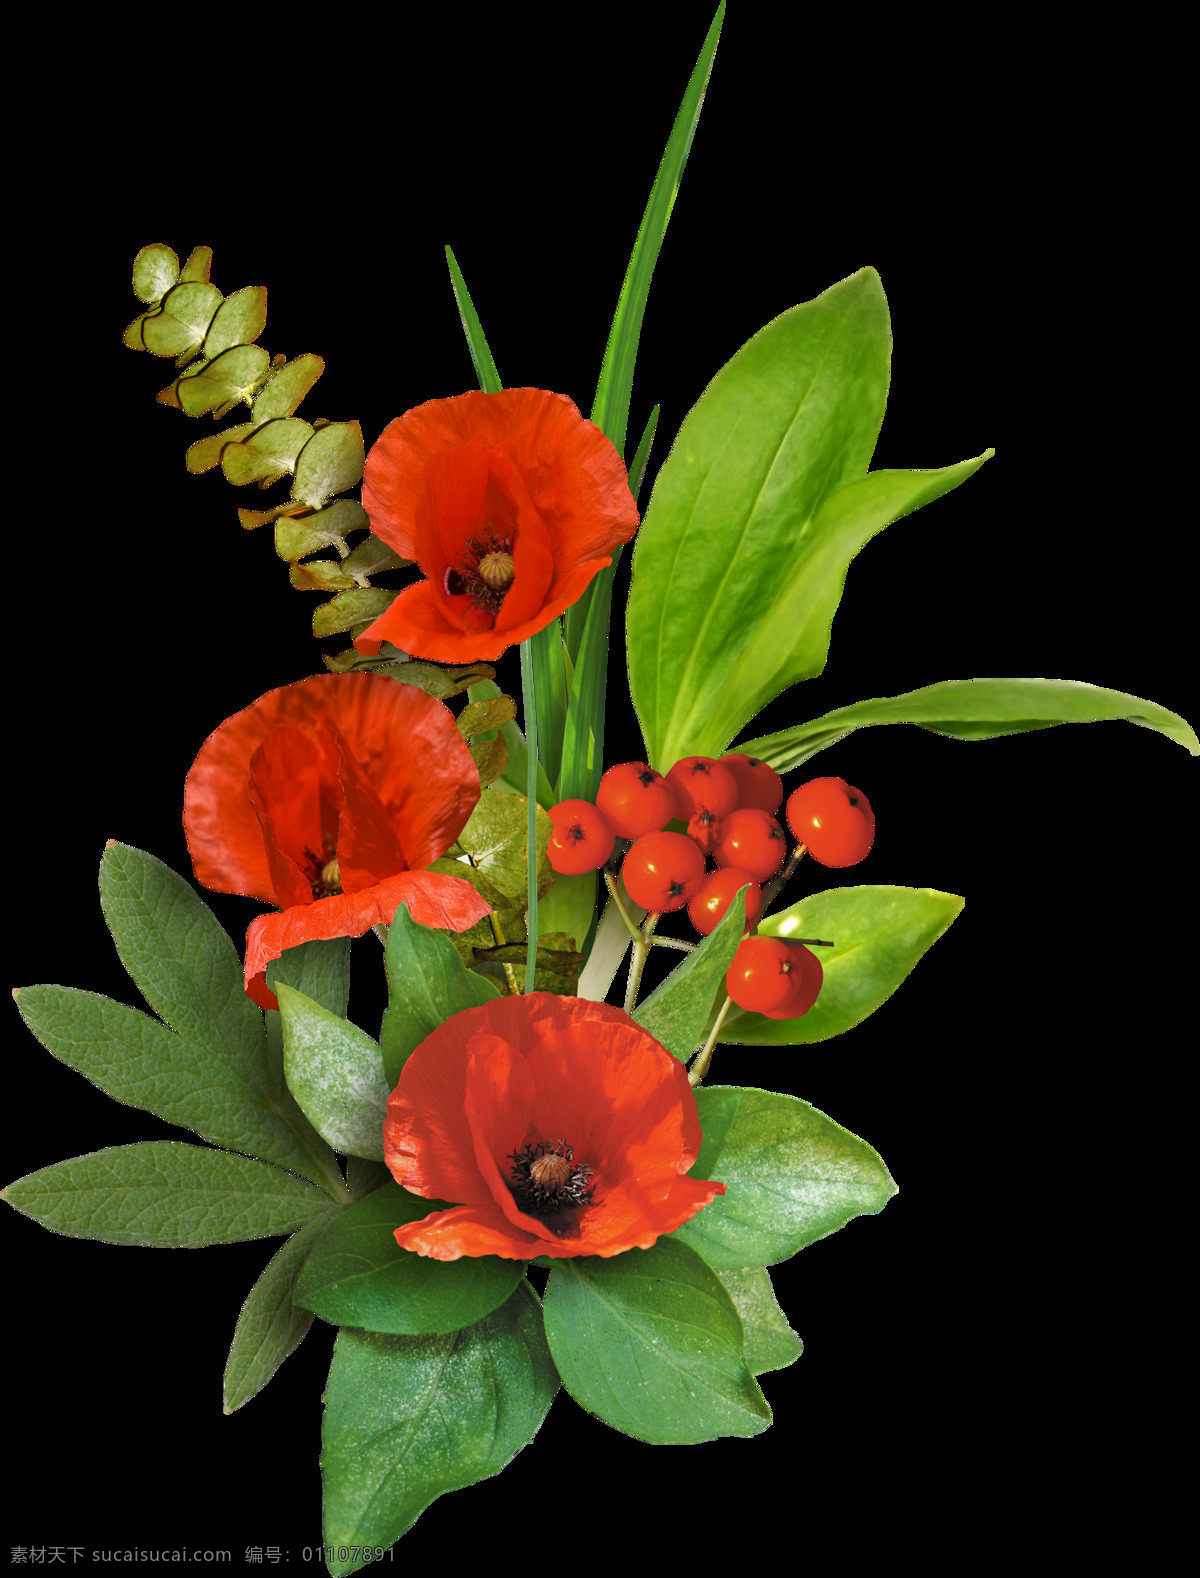 艳丽 观赏性 花卉 植物 插花 透明 红色 绿色 大片叶子 花蕾 透明素材 免扣素材 装饰图片